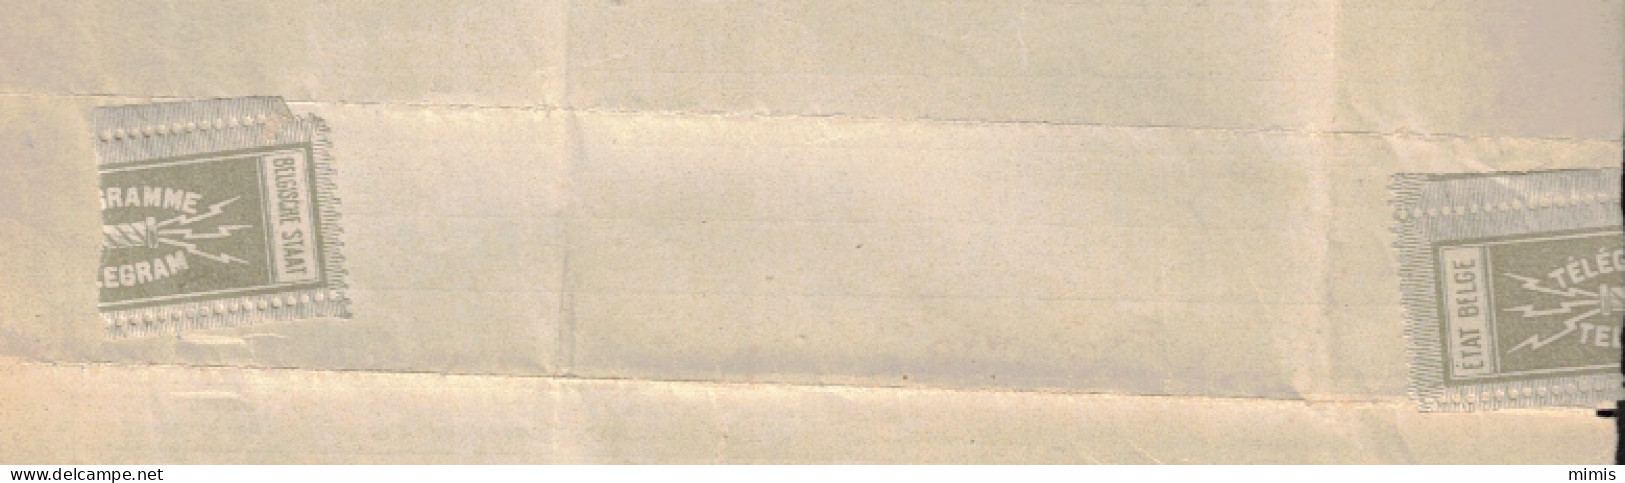 BELGIQUE      Télégramme  1922   Solvay   Avec étiquette De Fermeture - Telegrams